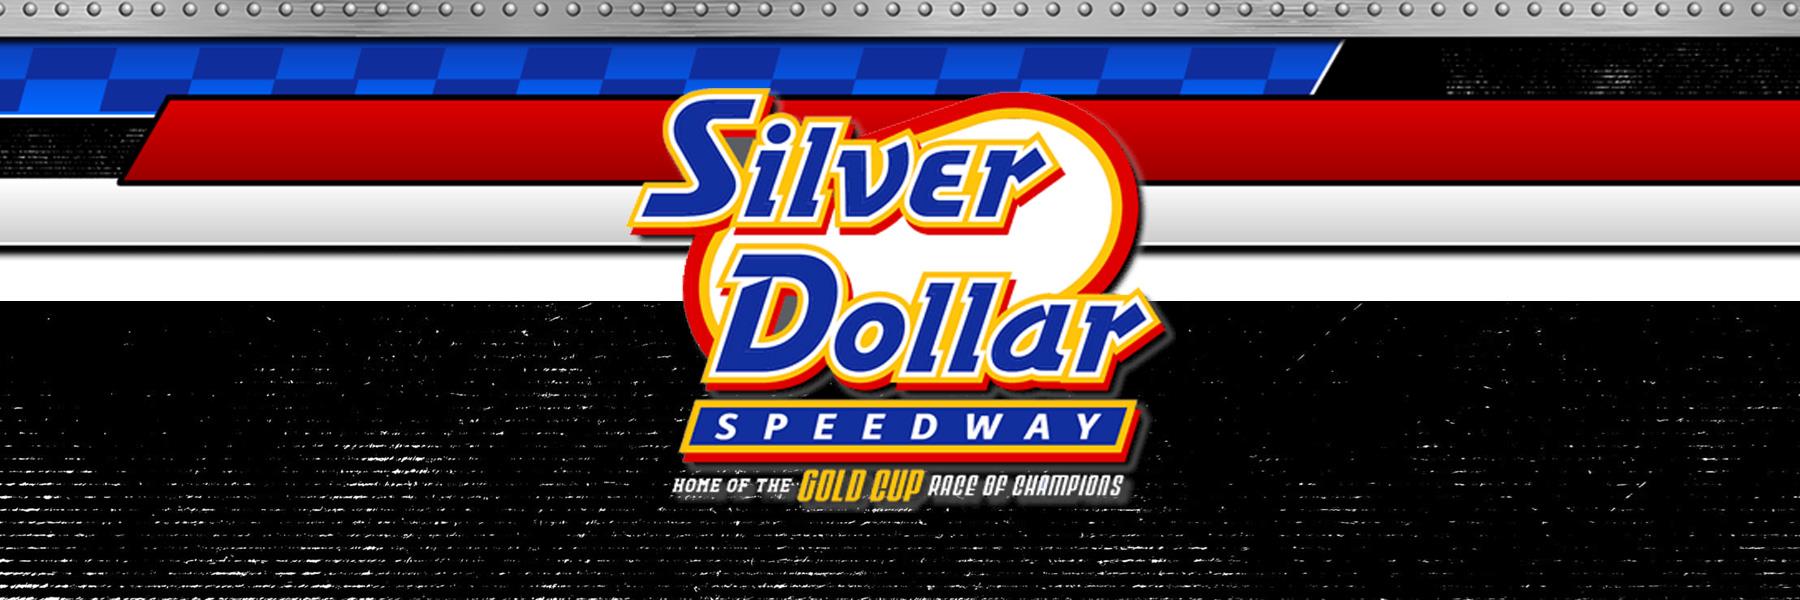 Silver Dollar Speedway